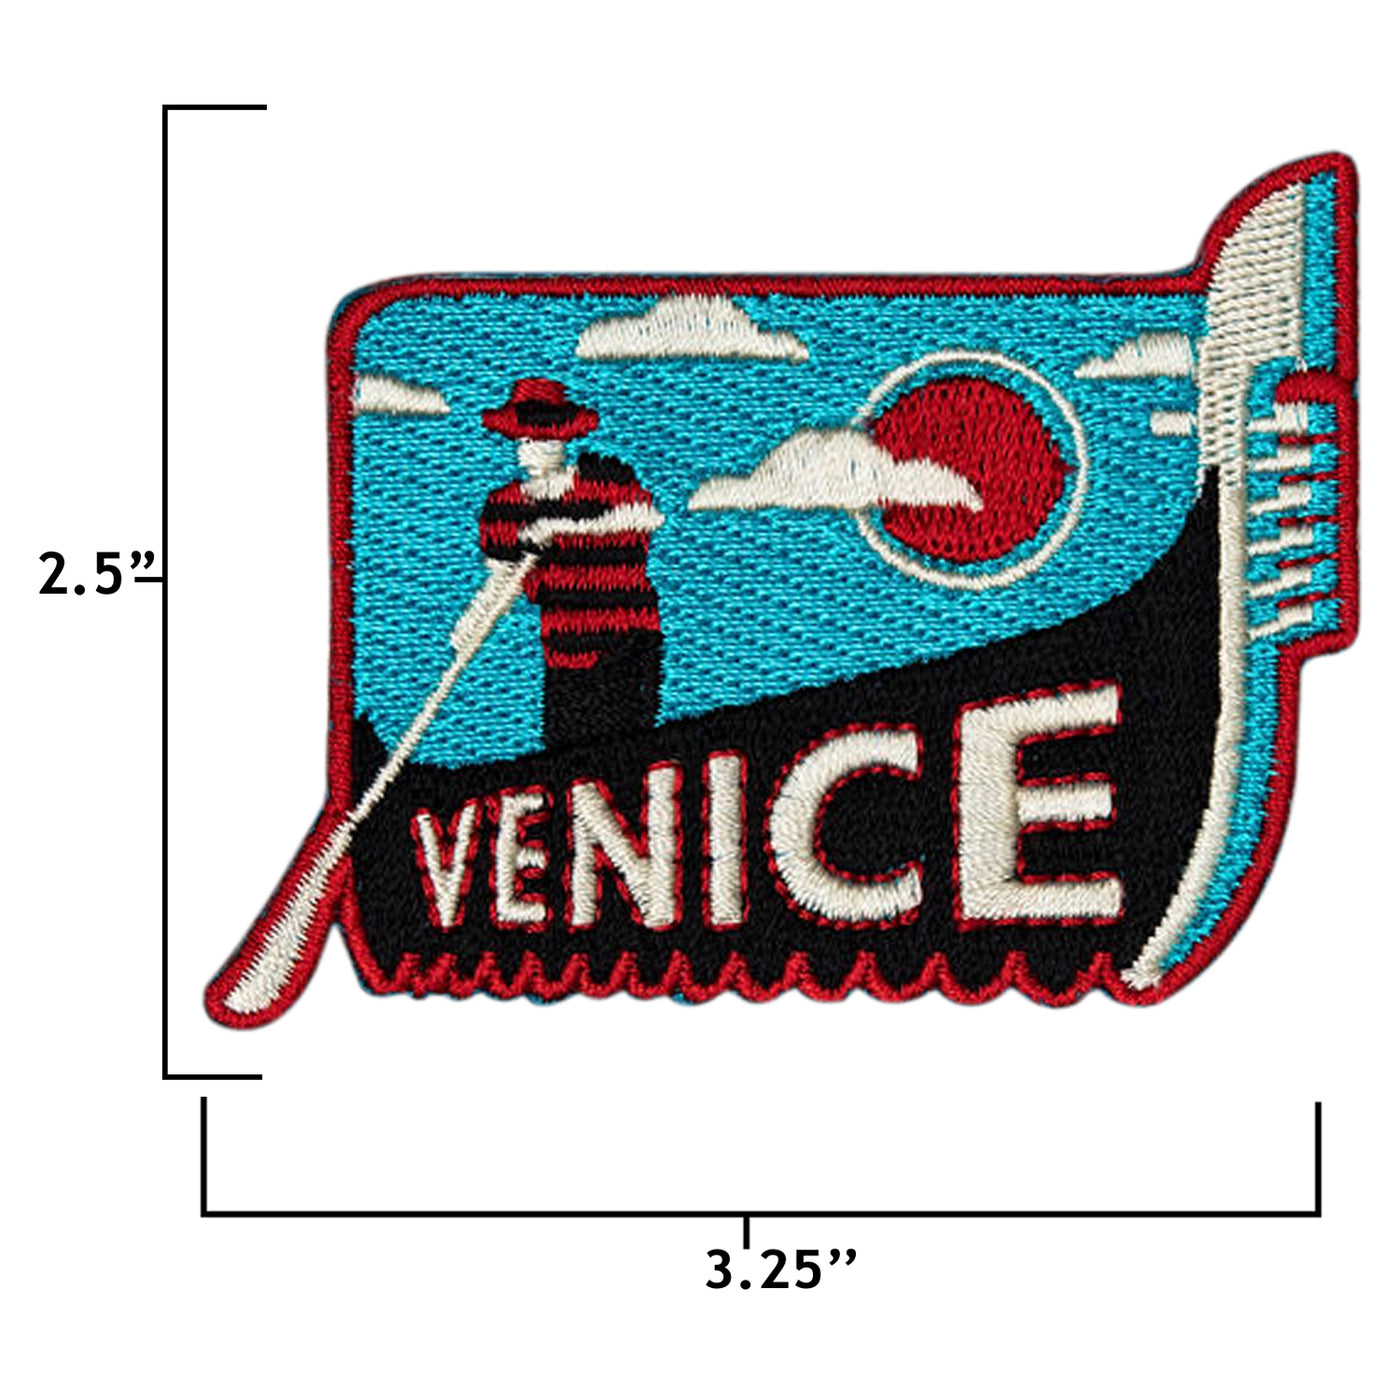 Venice Italy Hook Patch